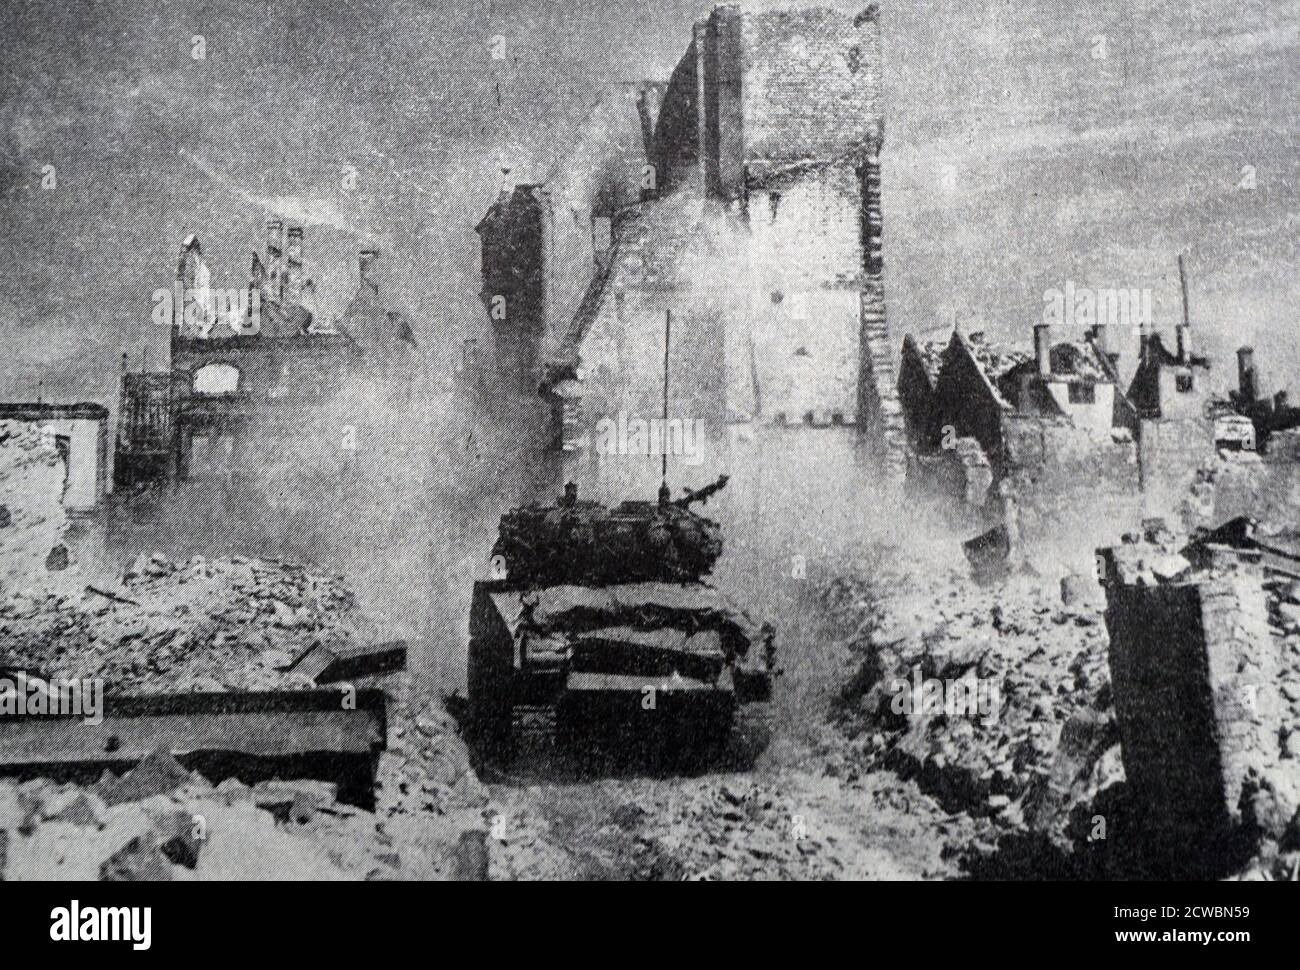 Schwarz-Weiß-Fotografie des Zweiten Weltkriegs (1939-1945) zeigt Panzer der 7. Amerikanischen Armee in Aktion unter den Ruinen der Stadt Nürnberg, die den Alliierten am 20. April 1945 fiel. Stockfoto